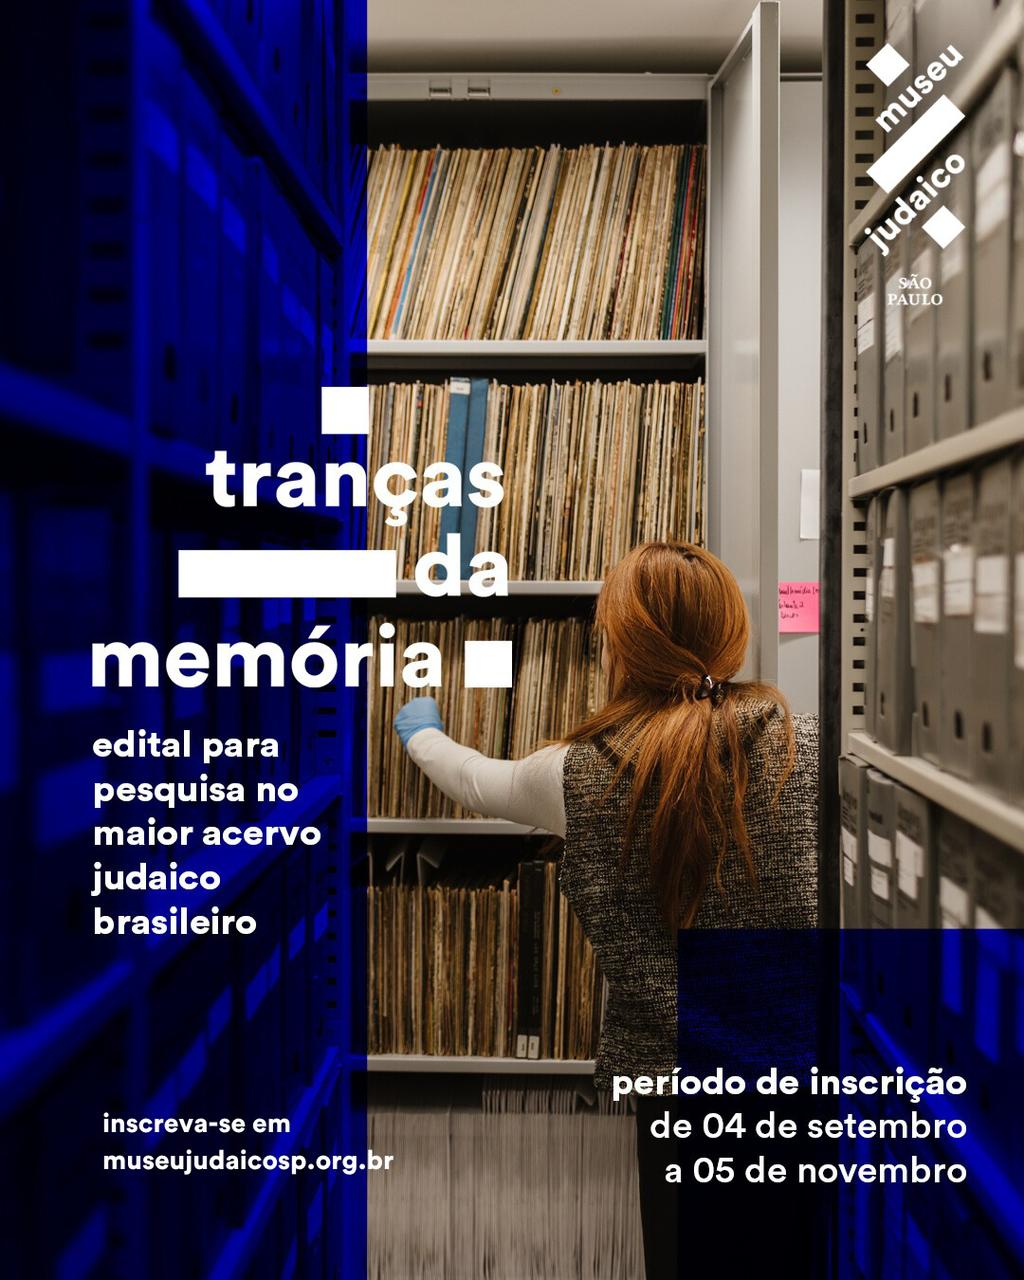 Tranças da memória - edital para pesquisa no maior acervo judaico brasileiro